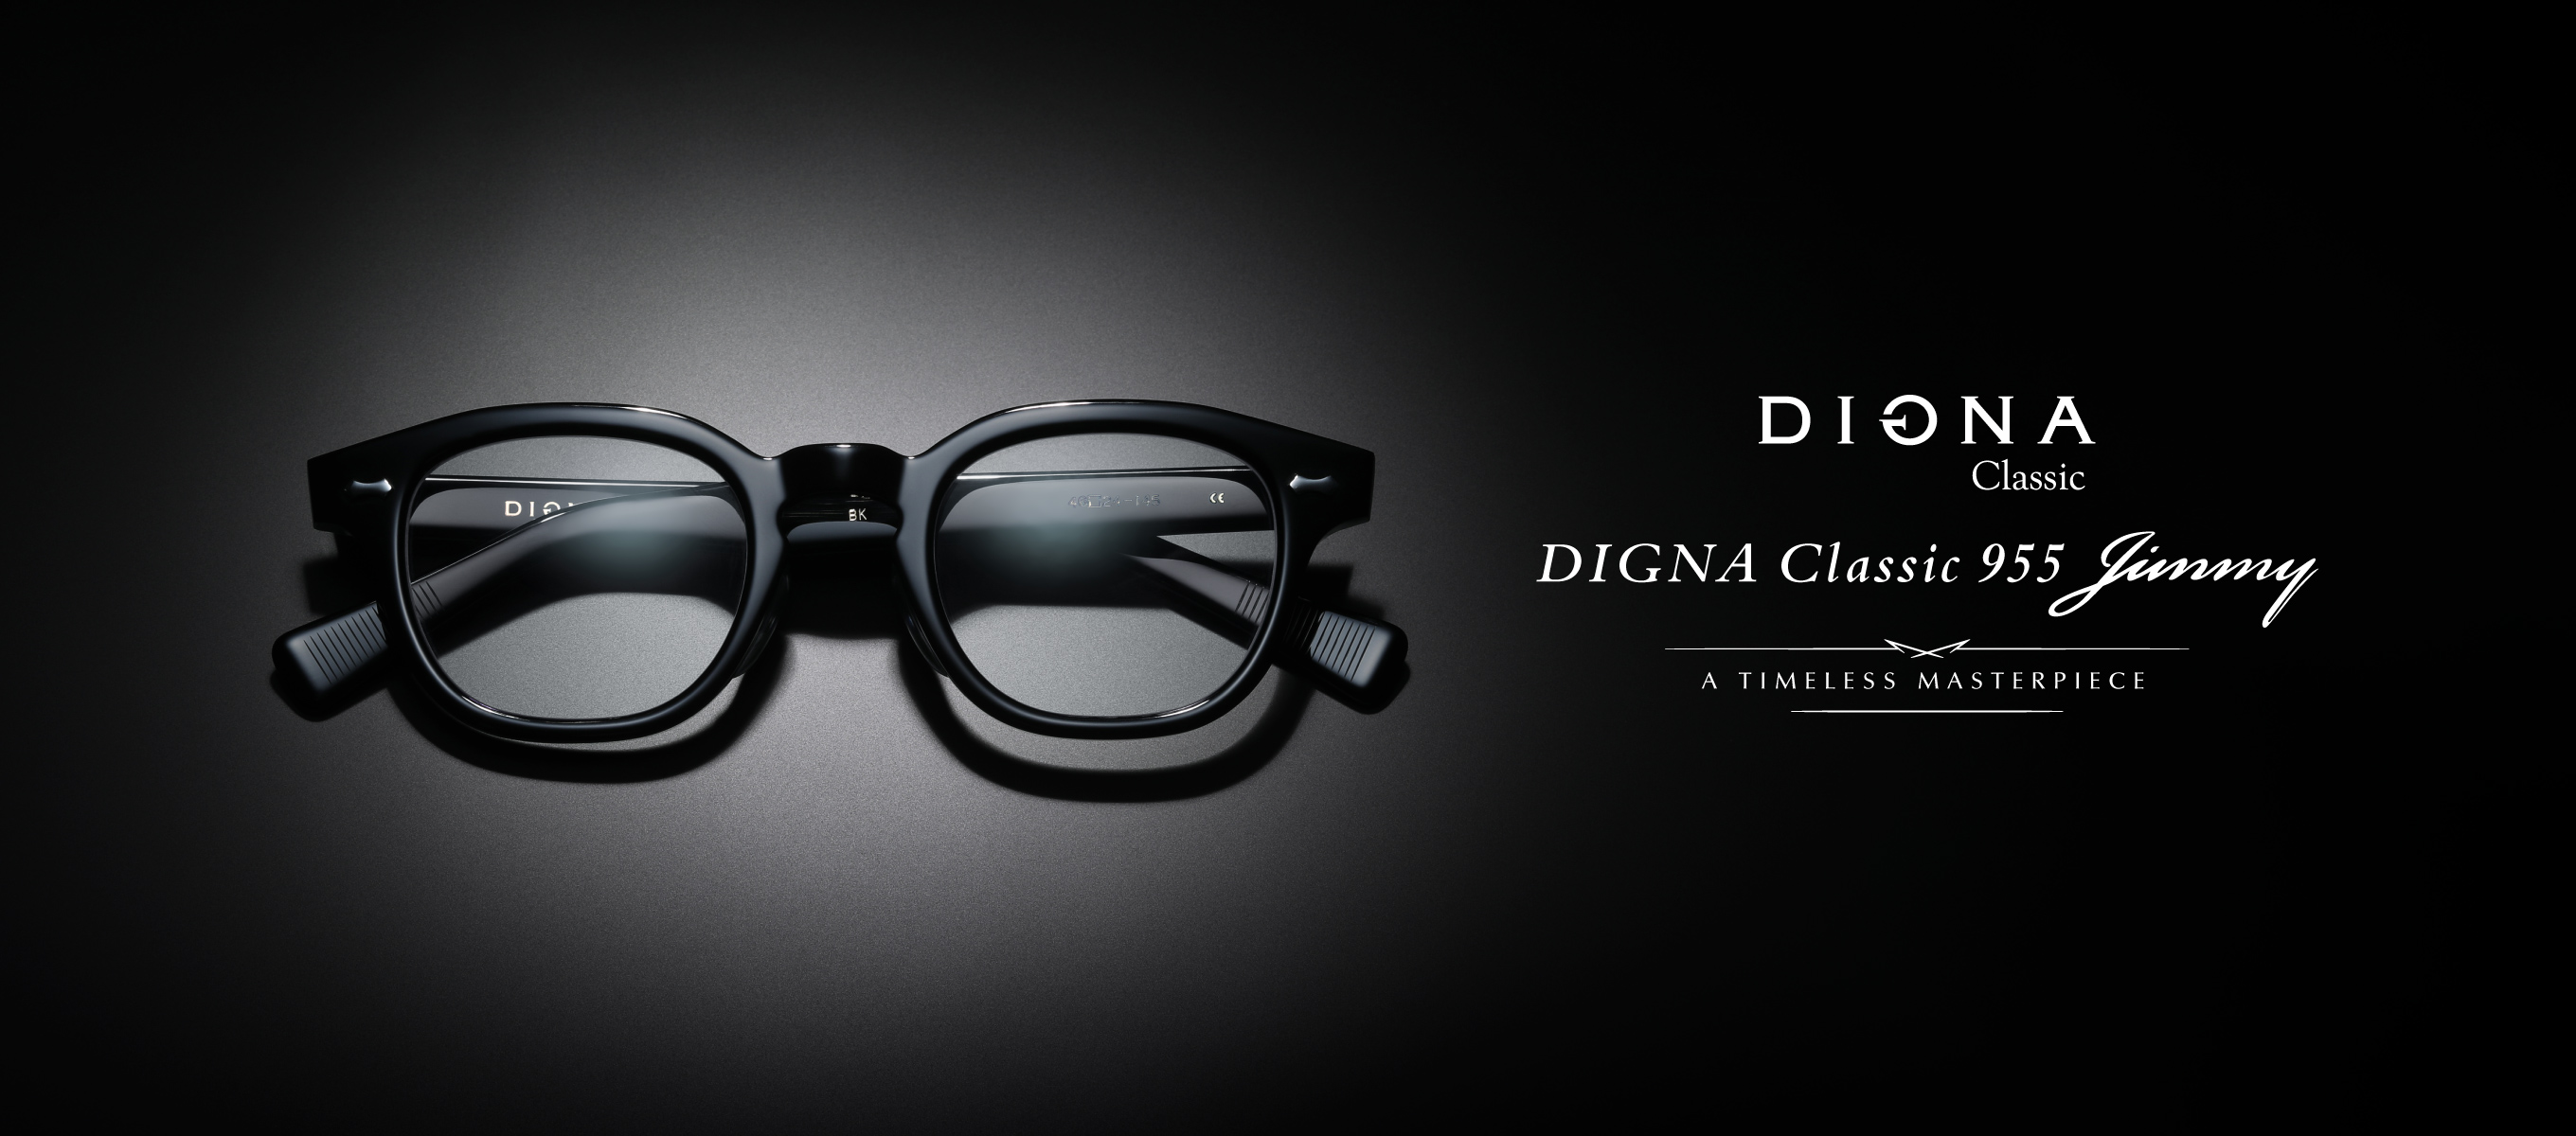 DIGNA Classic ディグナ クラシック フレーム サングラス